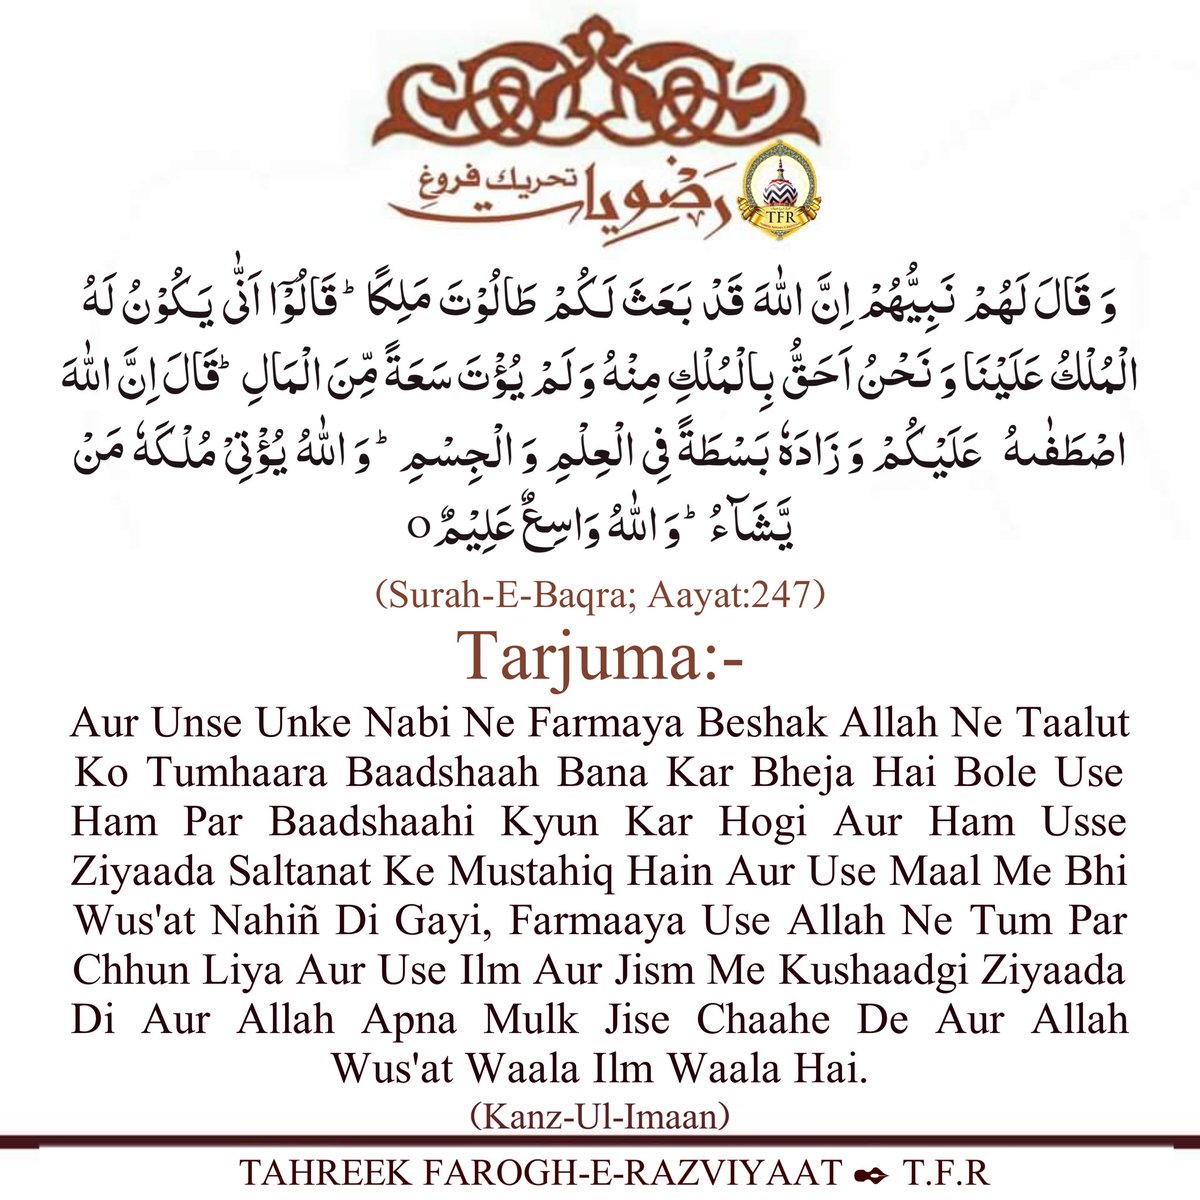 #Surah_E_Baqra; #Aayat_No_247
#Kanzul_Imaan  #Al_Baqra #quranmajeed #Quraan  #Quran  #quranquotes #Quran #Quranhour #Qurantime #quran_thedivinebook